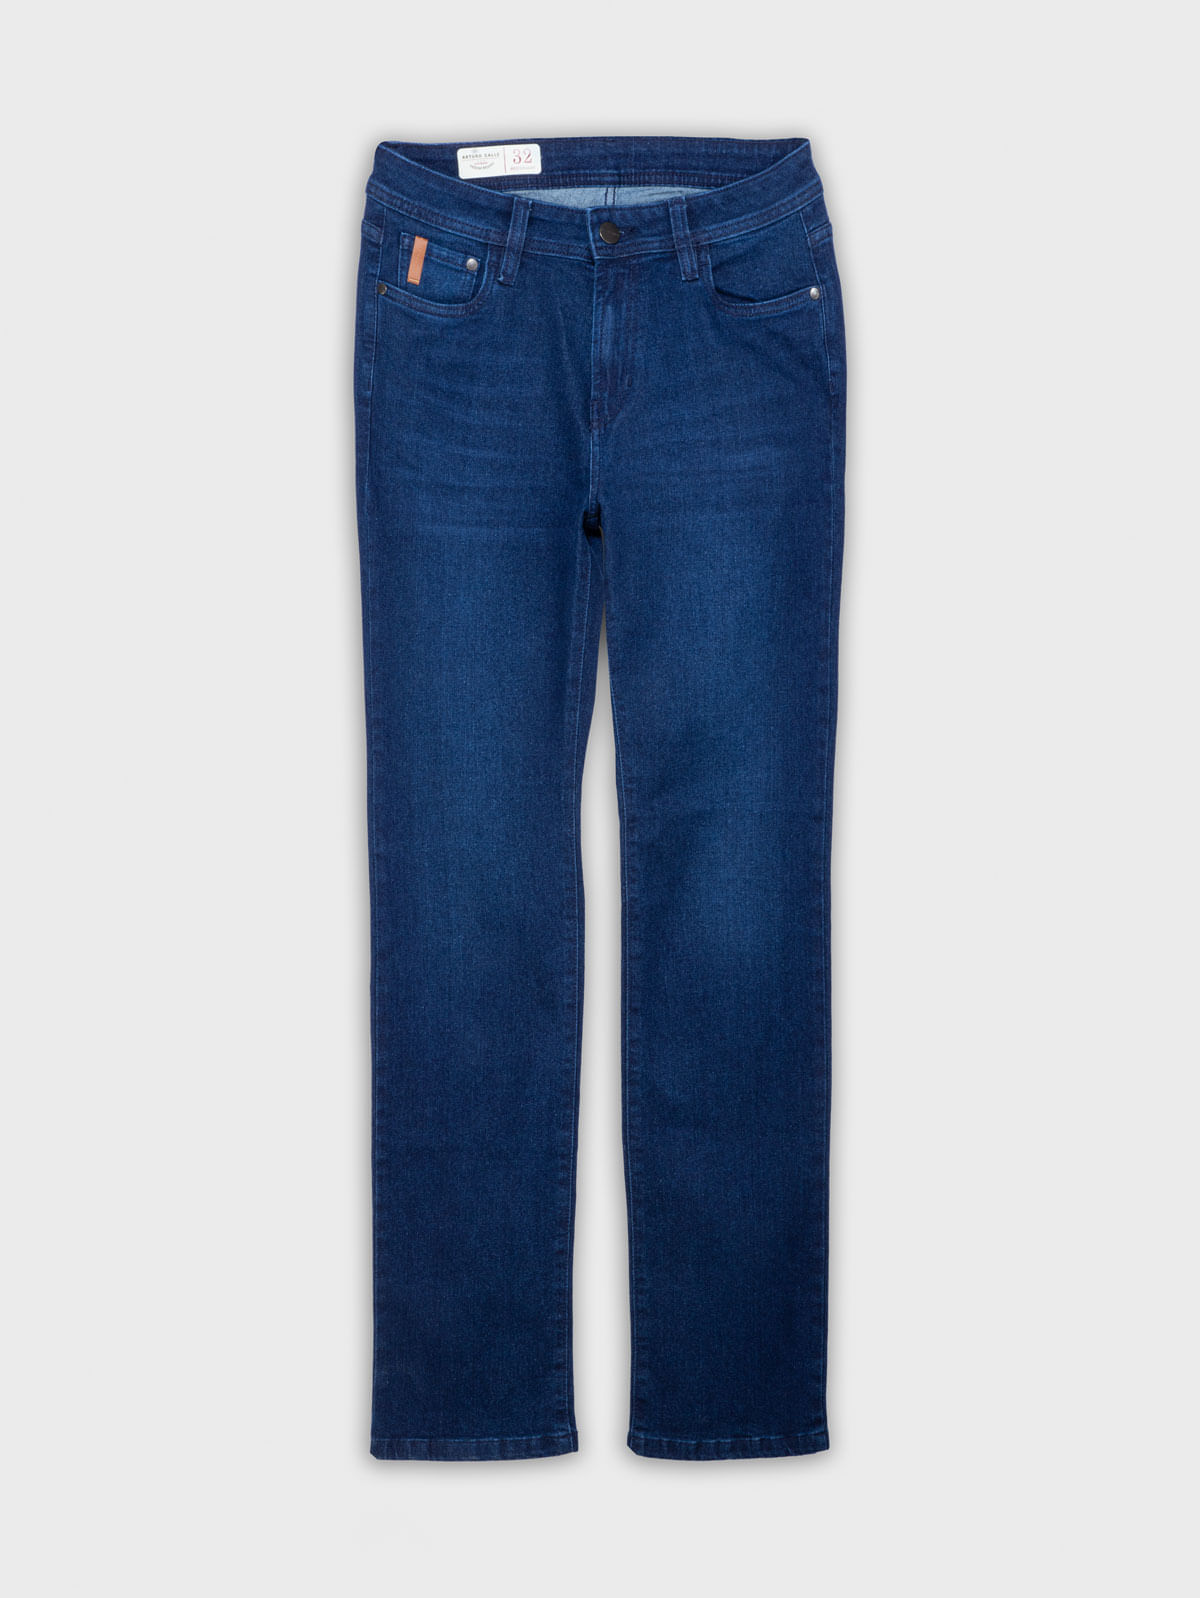 Todo jeans  💙Azul clásico💙 Straday desde el talle 34 al 46